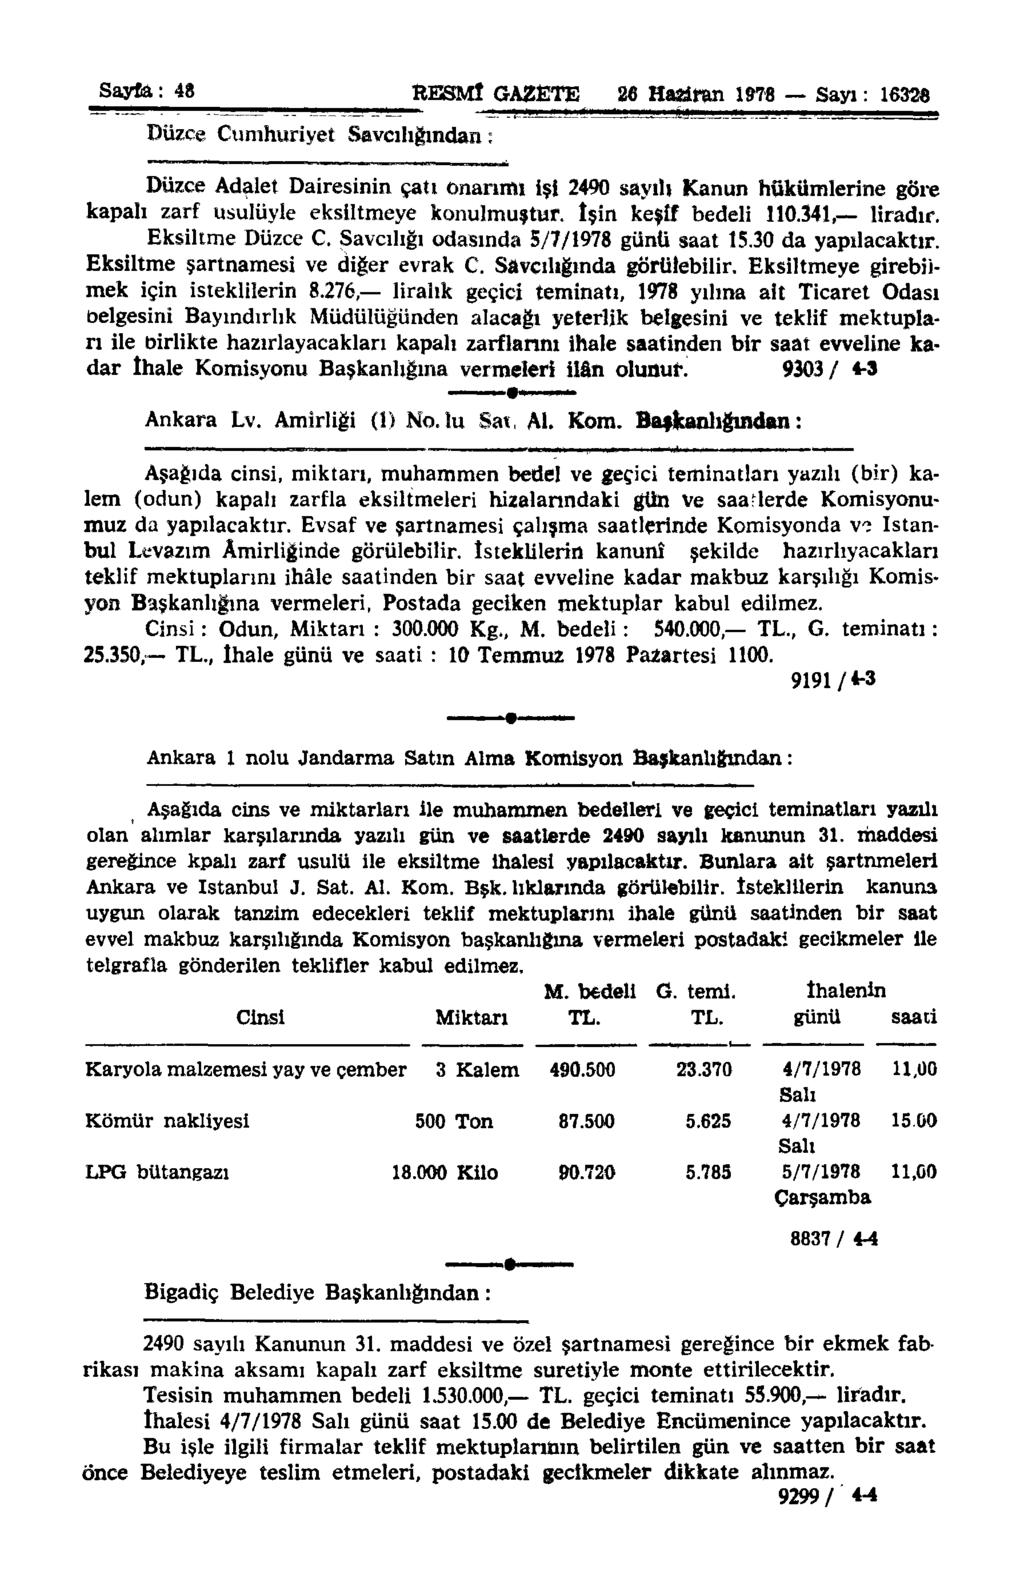 Sayfa: 48 RESMİ GAZETE 26 Haziran 1978 Sayı: 1632«Düzce Cumhuriyet Savcılığından: Düzce Adalet Dairesinin çatı onarımı işi 2490 sayılı Kanun hükümlerine göre kapalı zarf usulüyle eksiltmeye